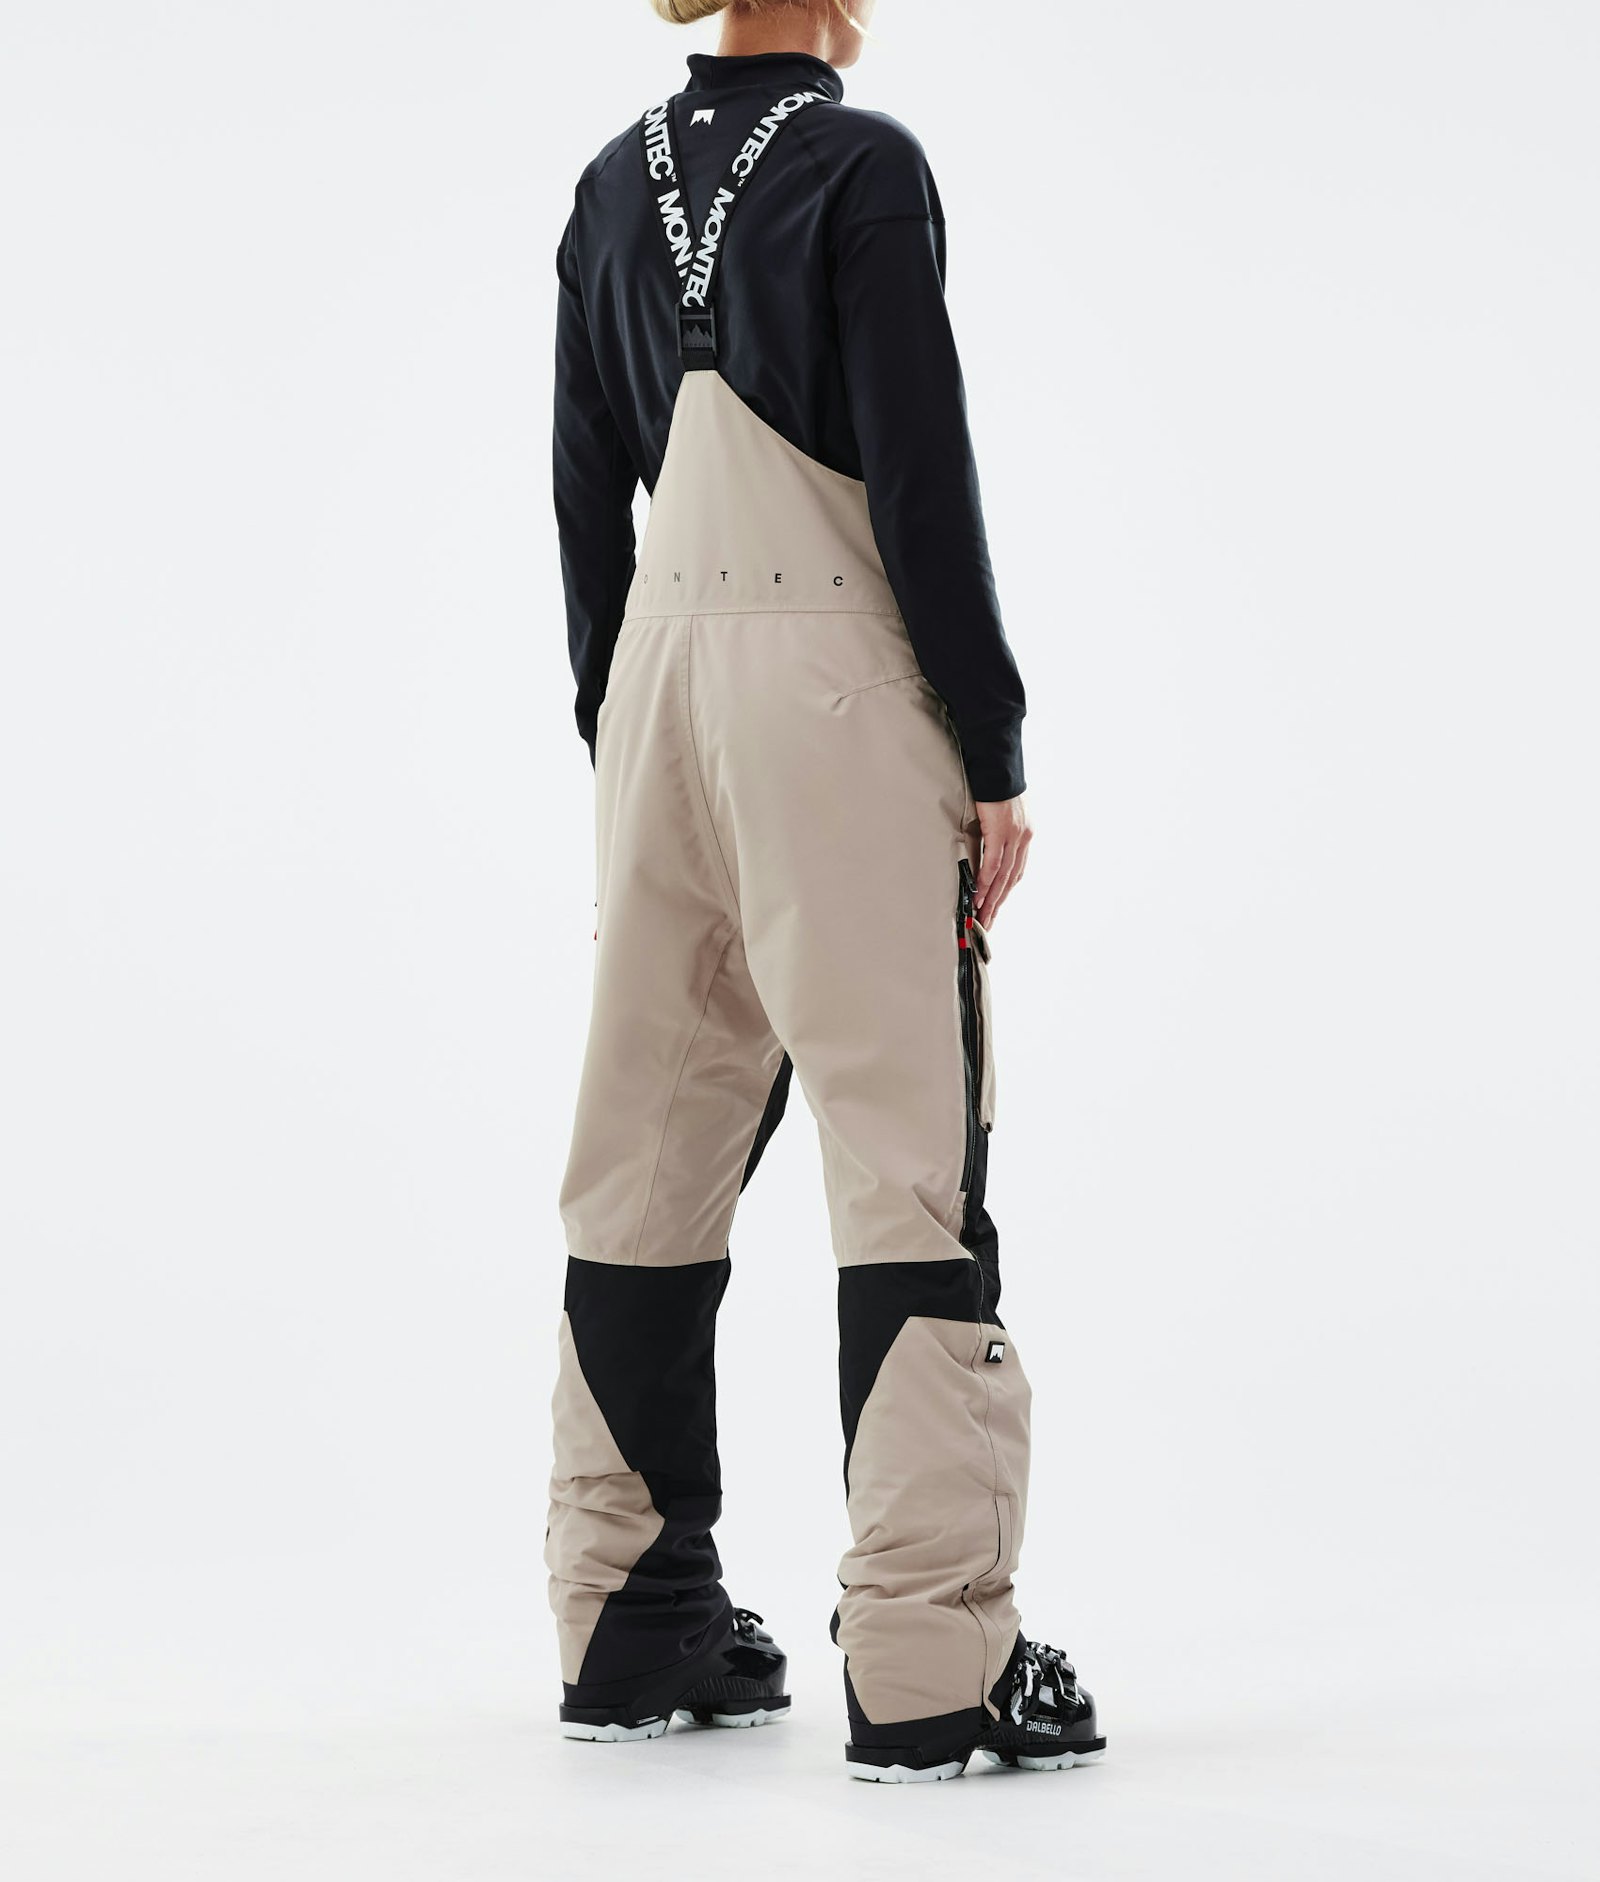 Fawk W 2021 Spodnie Narciarskie Kobiety Sand/Black